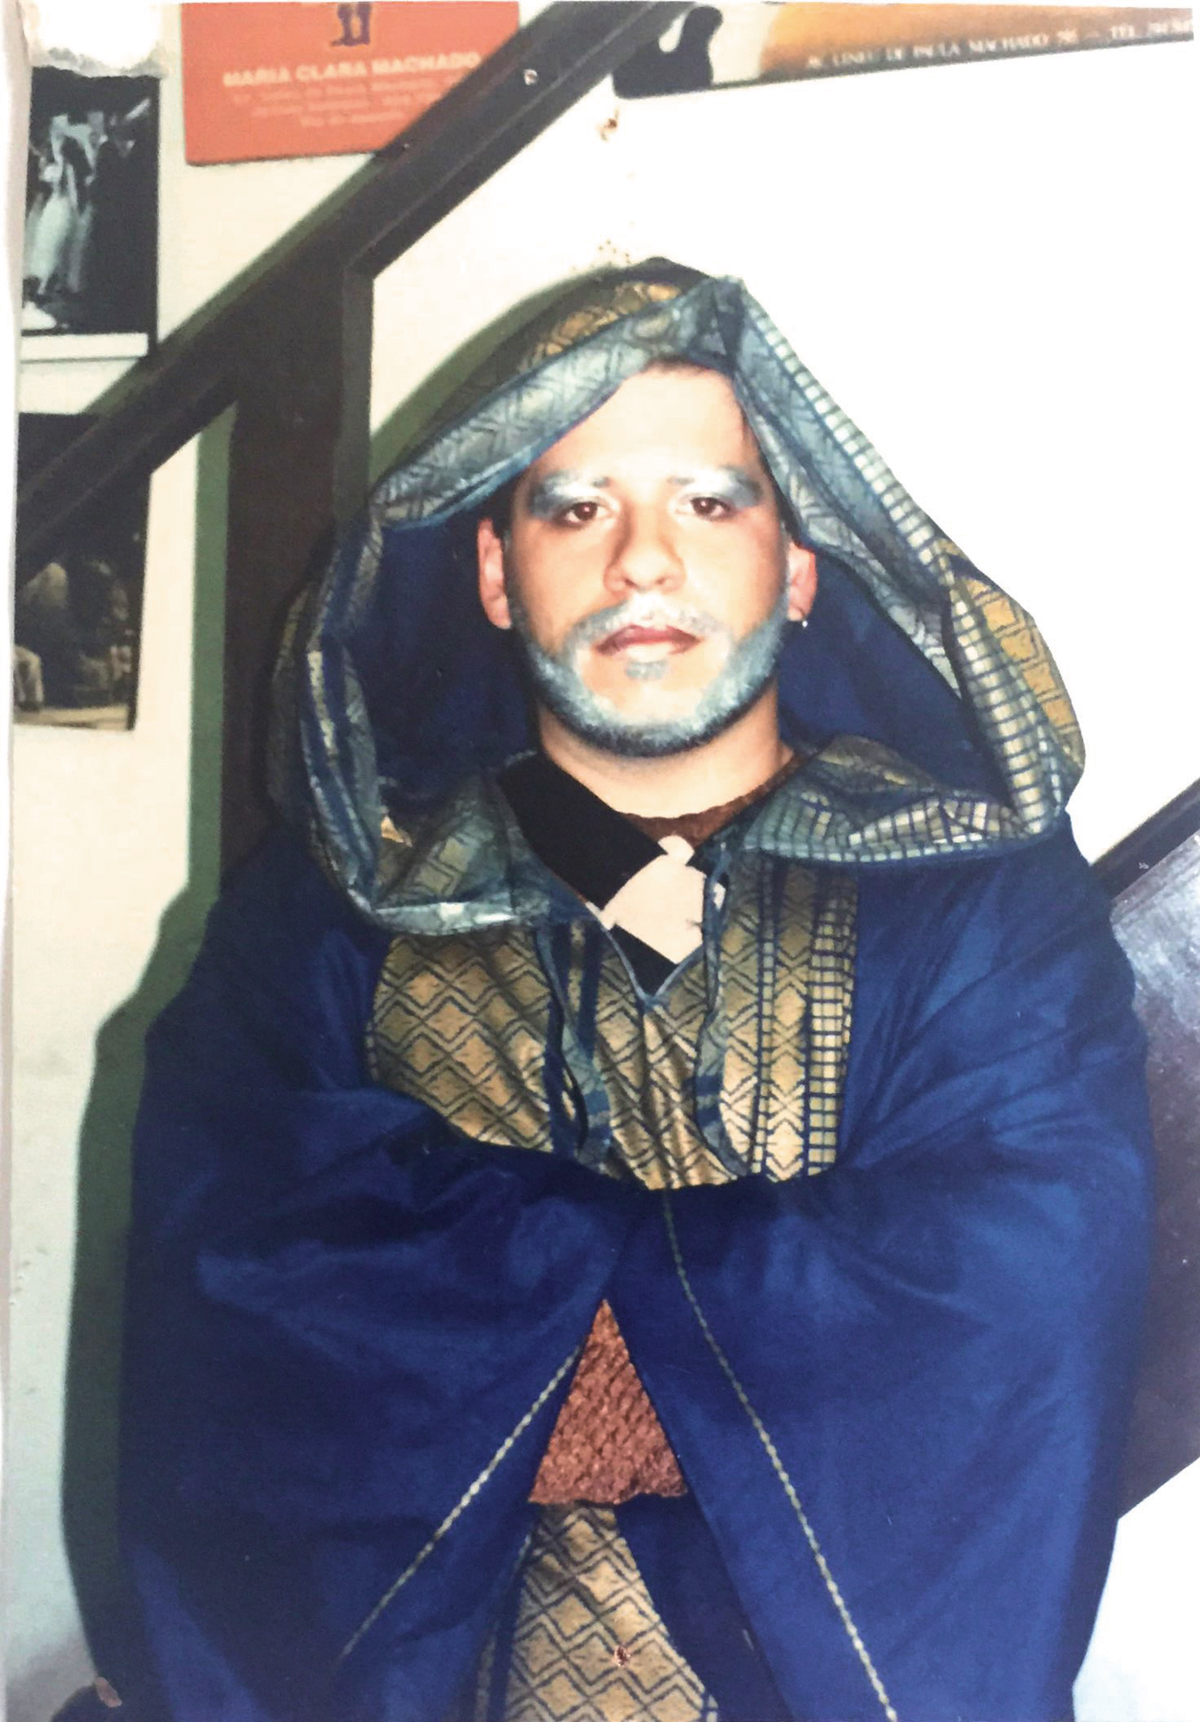 Leandro Hassum na peça 'Bela adormecida', de 1998